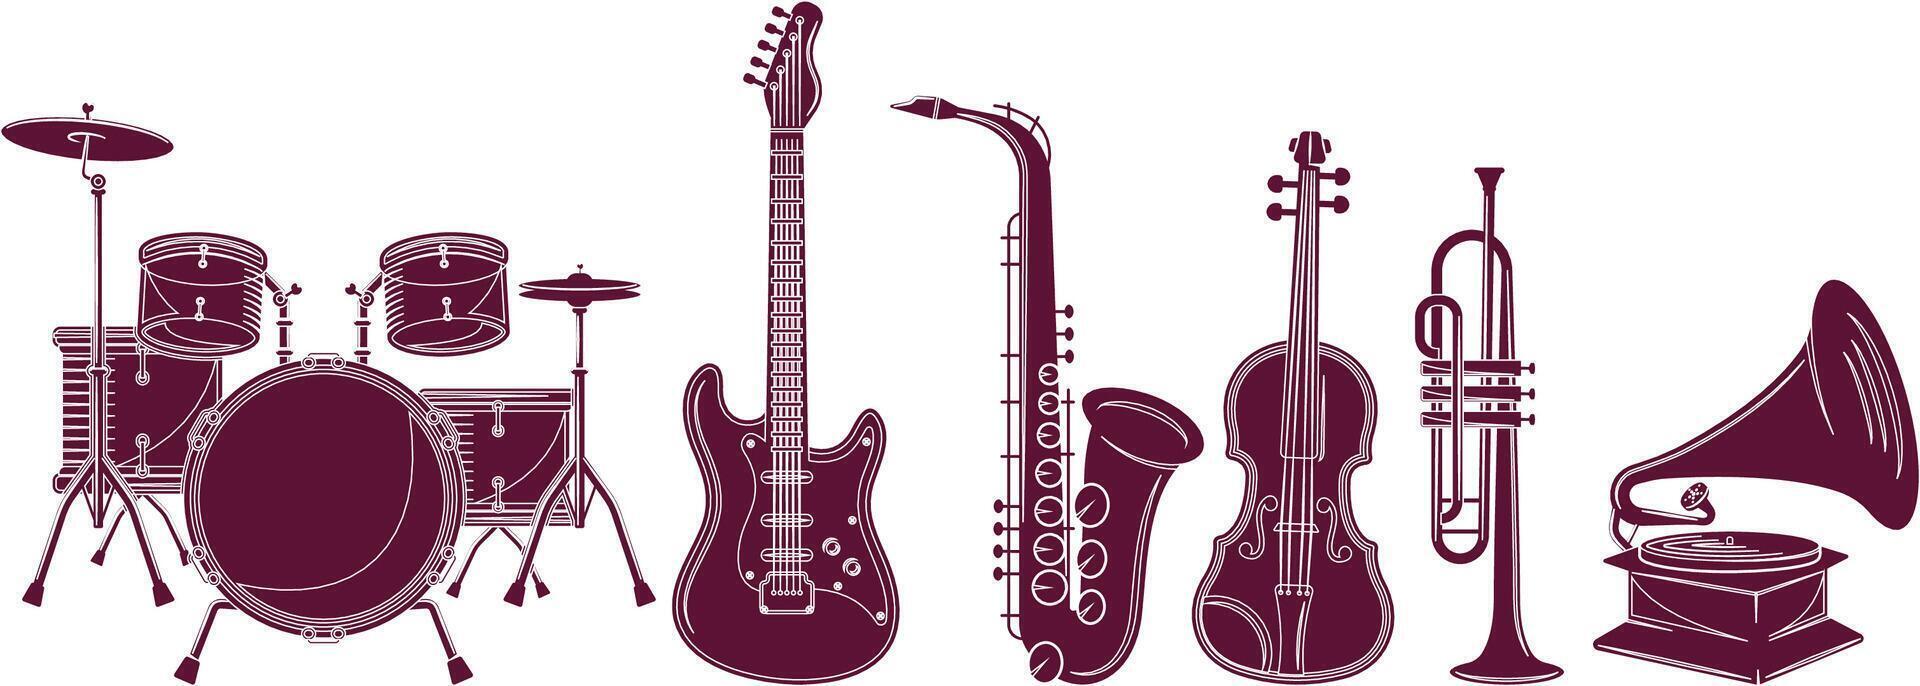 conjunto de música instrumentos - mano dibujado en vector